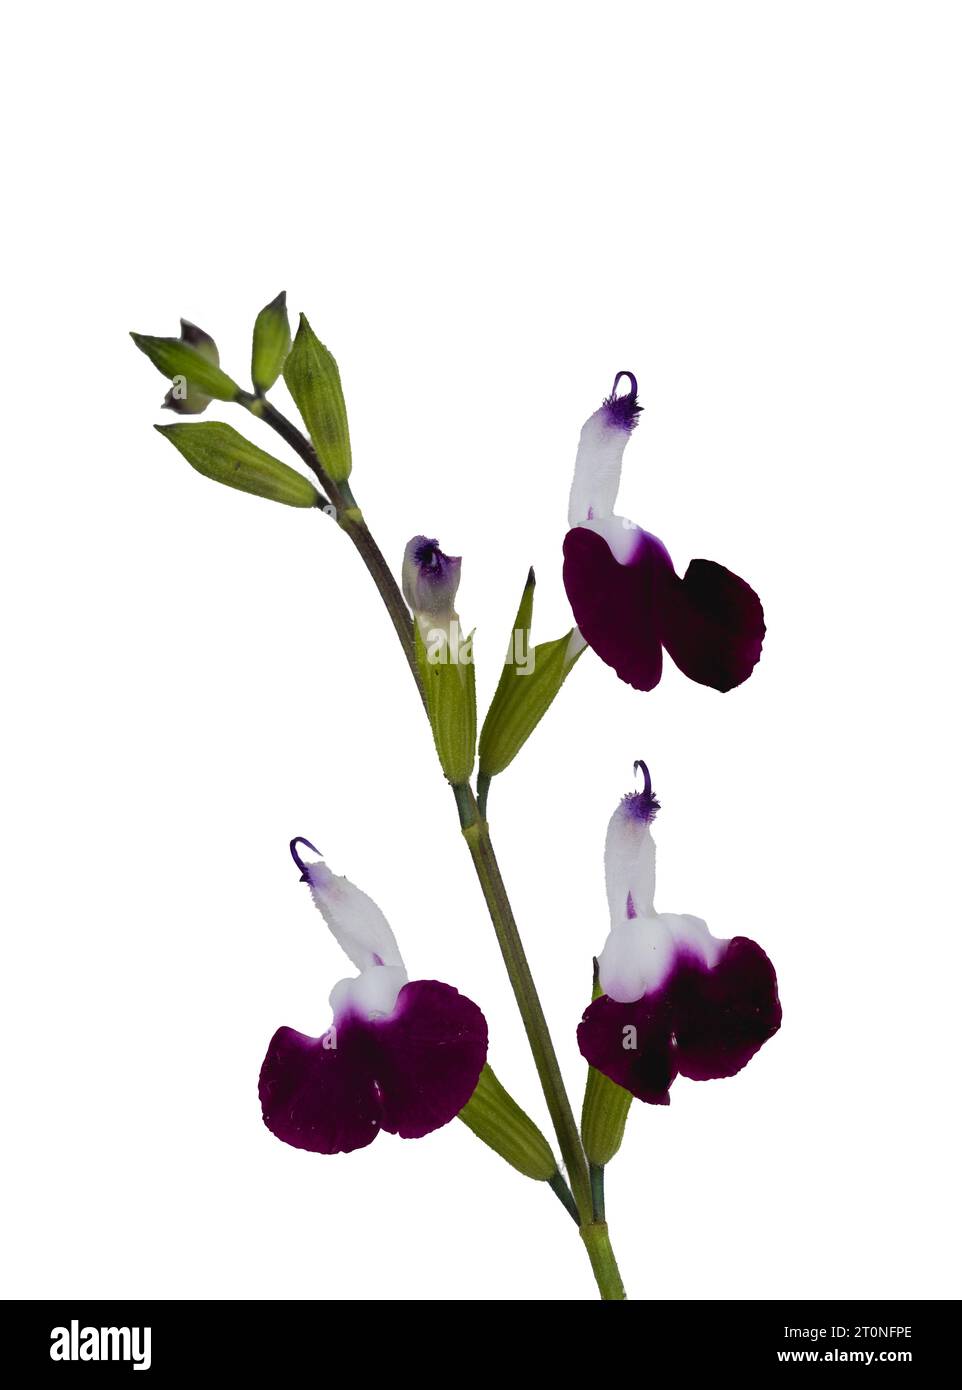 Dos flores blancas y moradas tonificadas de la salvia arbustiva medio resistente, Salvia 'labios amatista' sobre un fondo blanco Foto de stock